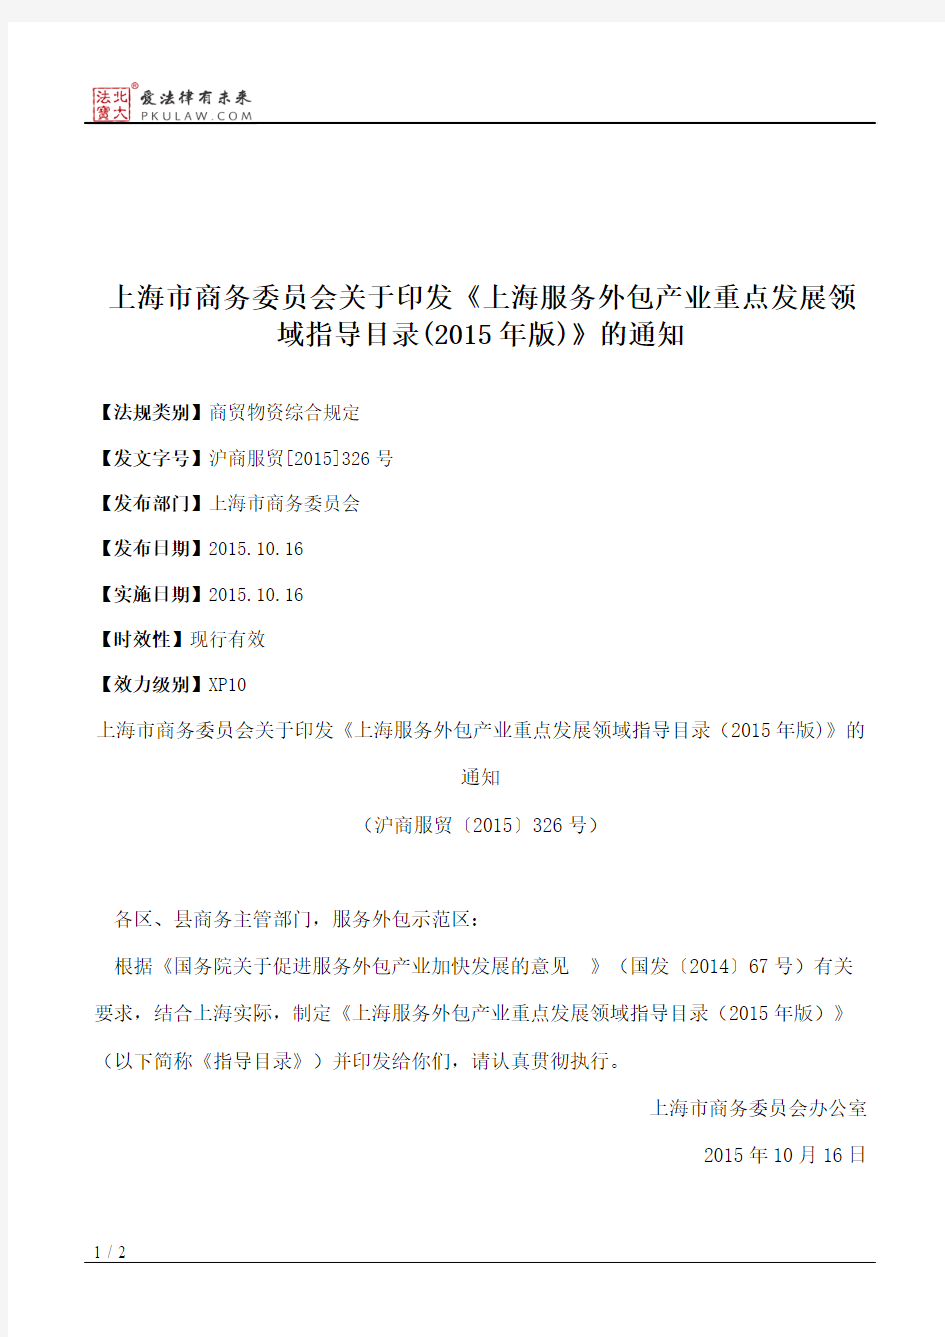 上海市商务委员会关于印发《上海服务外包产业重点发展领域指导目